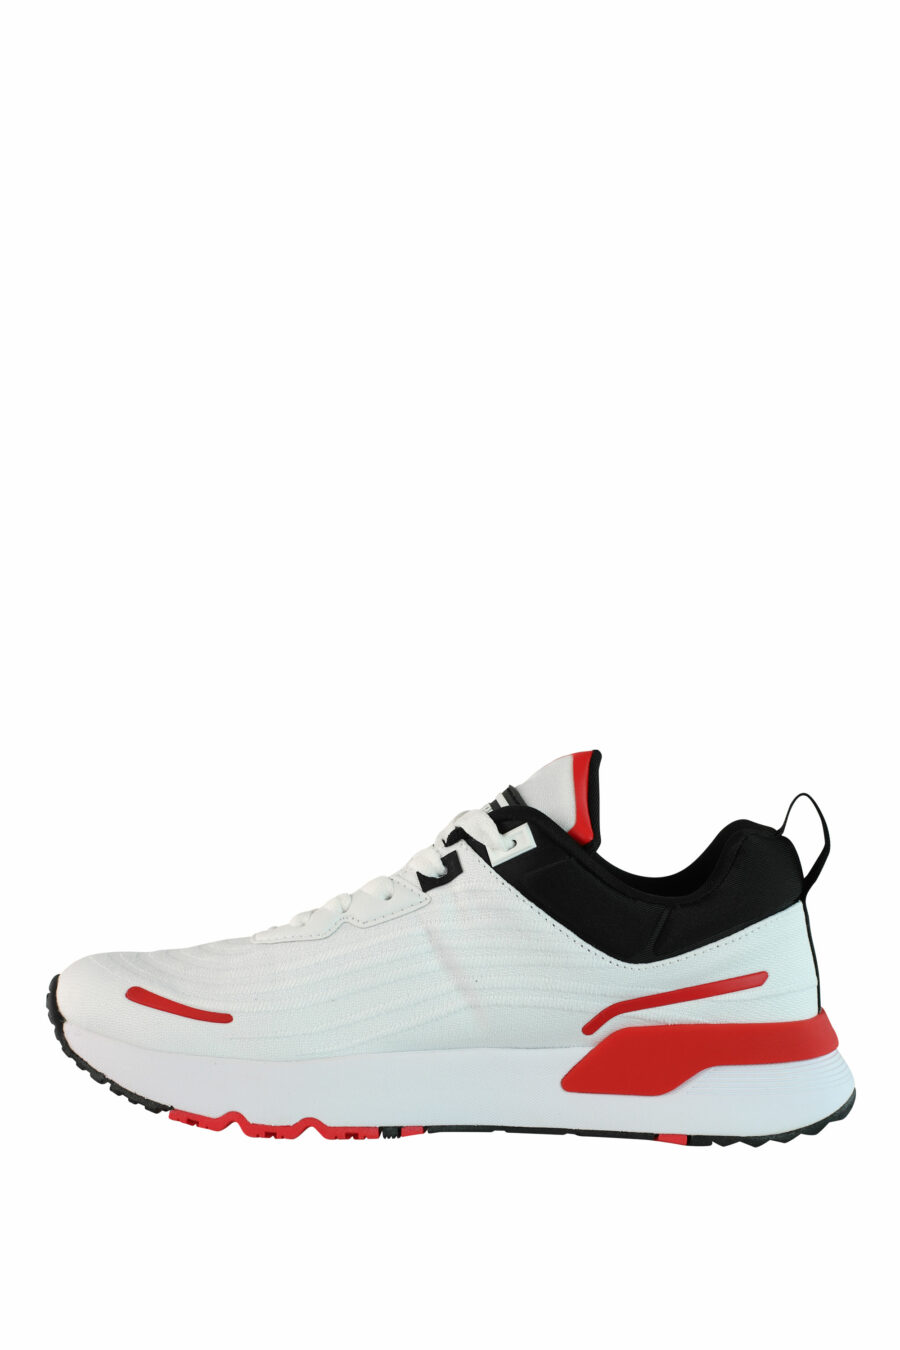 Zapatillas blancas multicolor con logo circular - IMG 0989